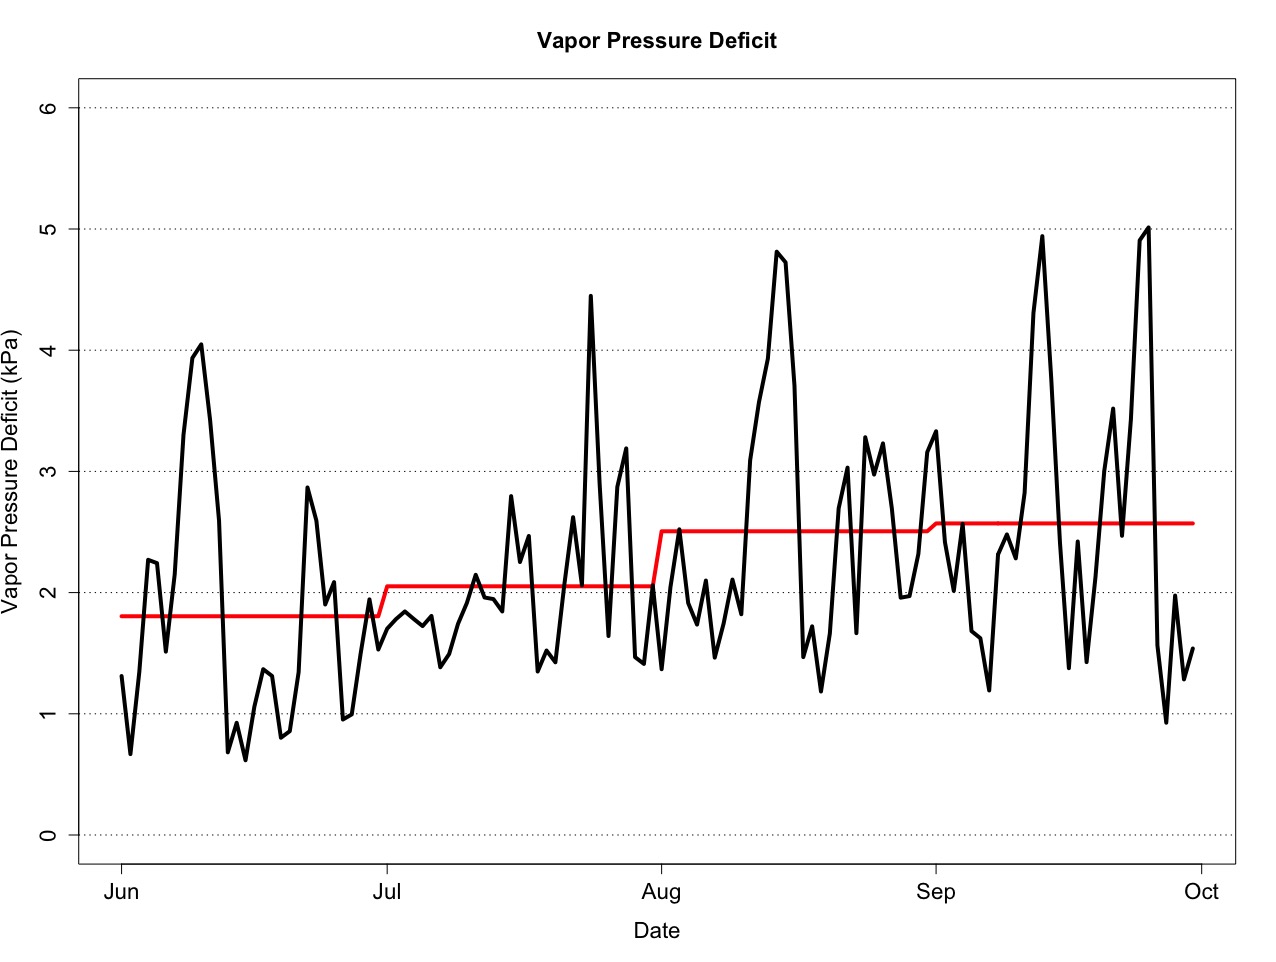 Figure 2: Vapor Pressure Deficit